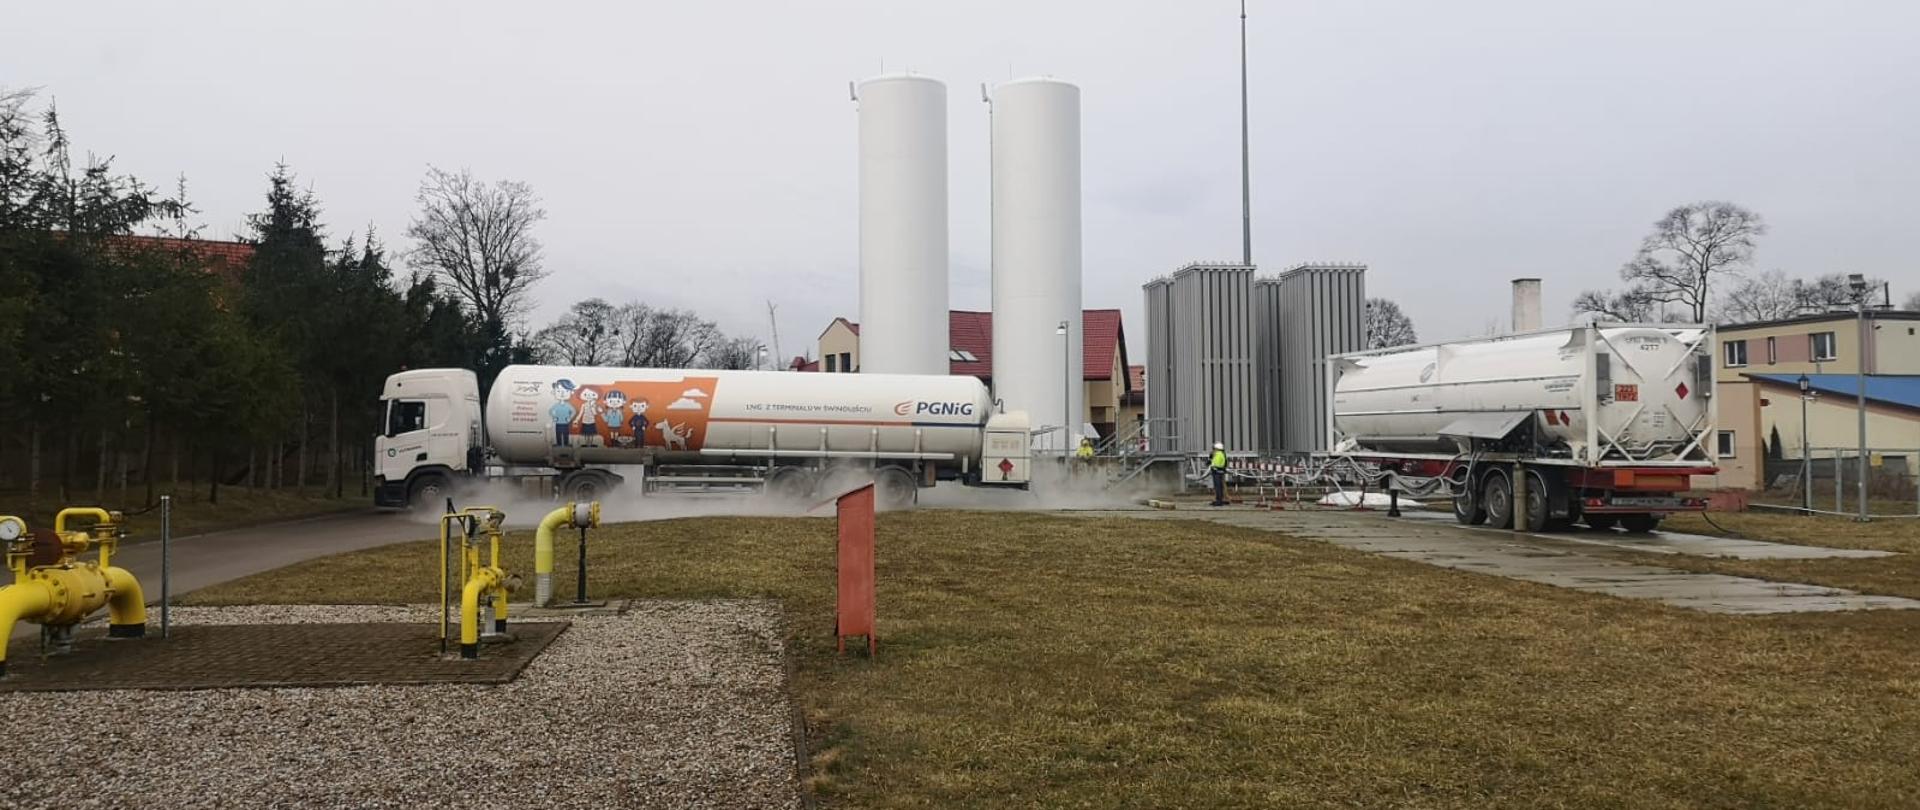 Stacja regazyfikacji skroplonego gazu LNG